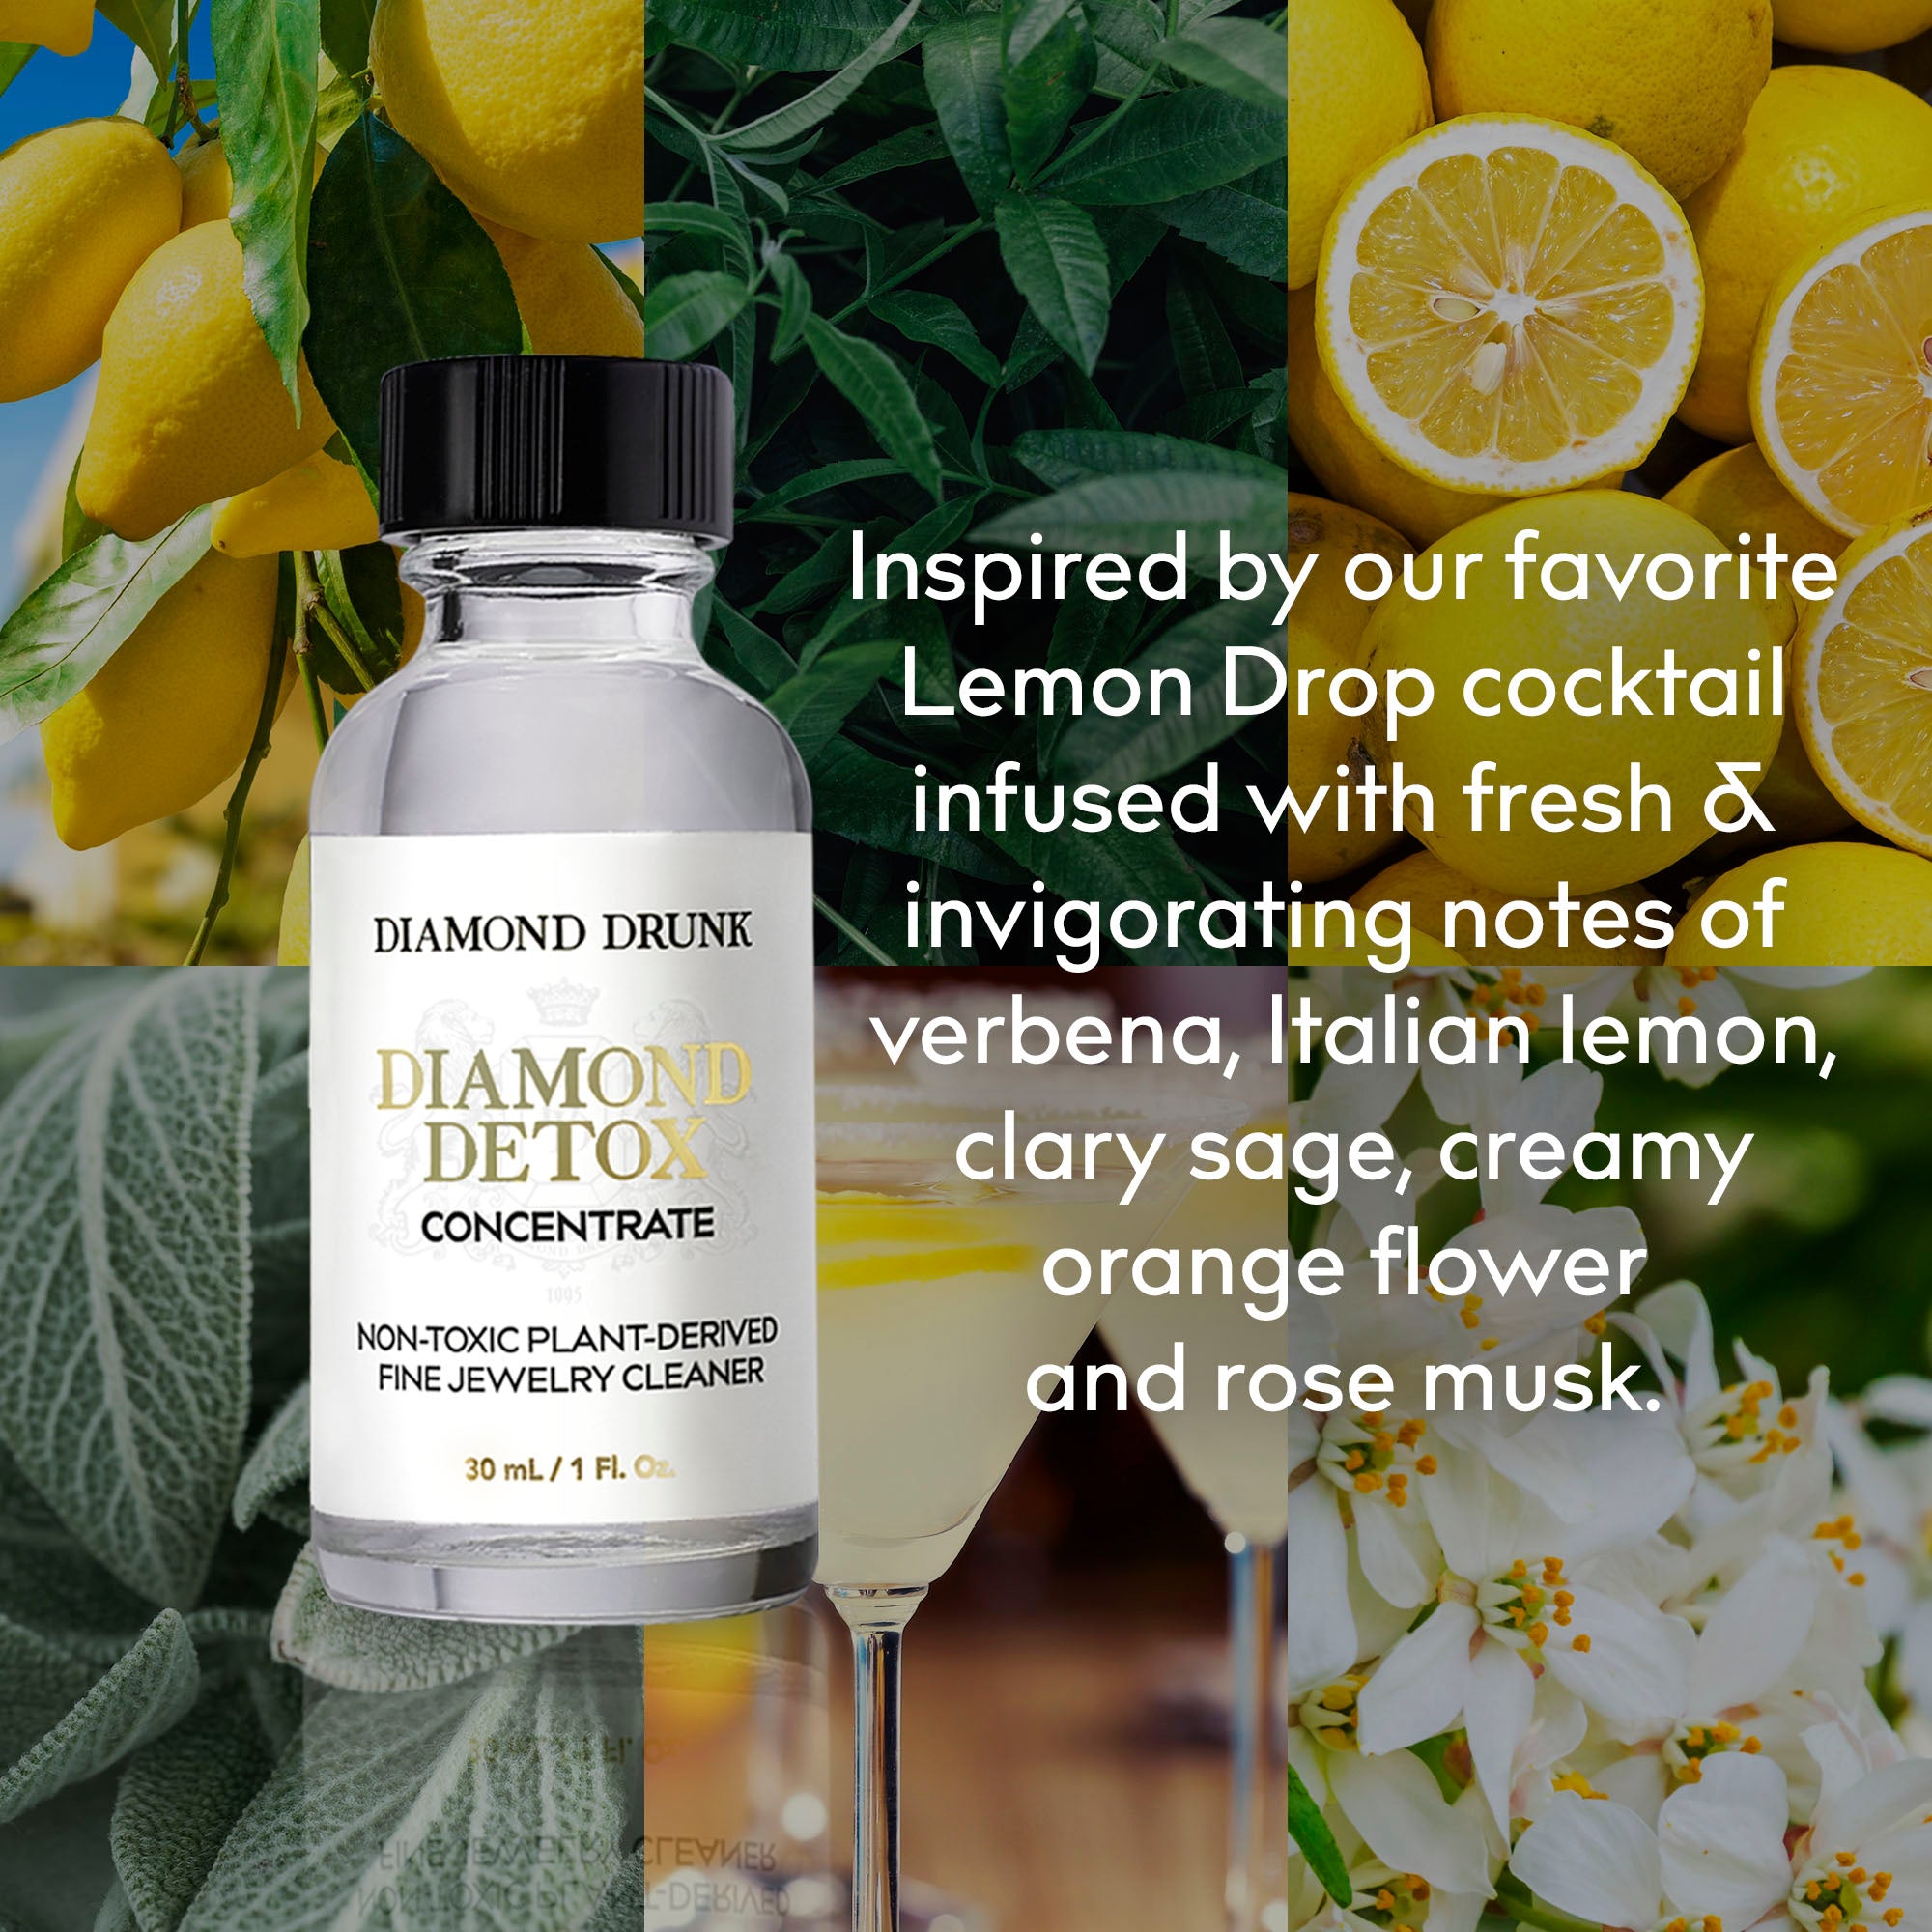 Diamond Detox Concentrate Lemon Drop No. 22